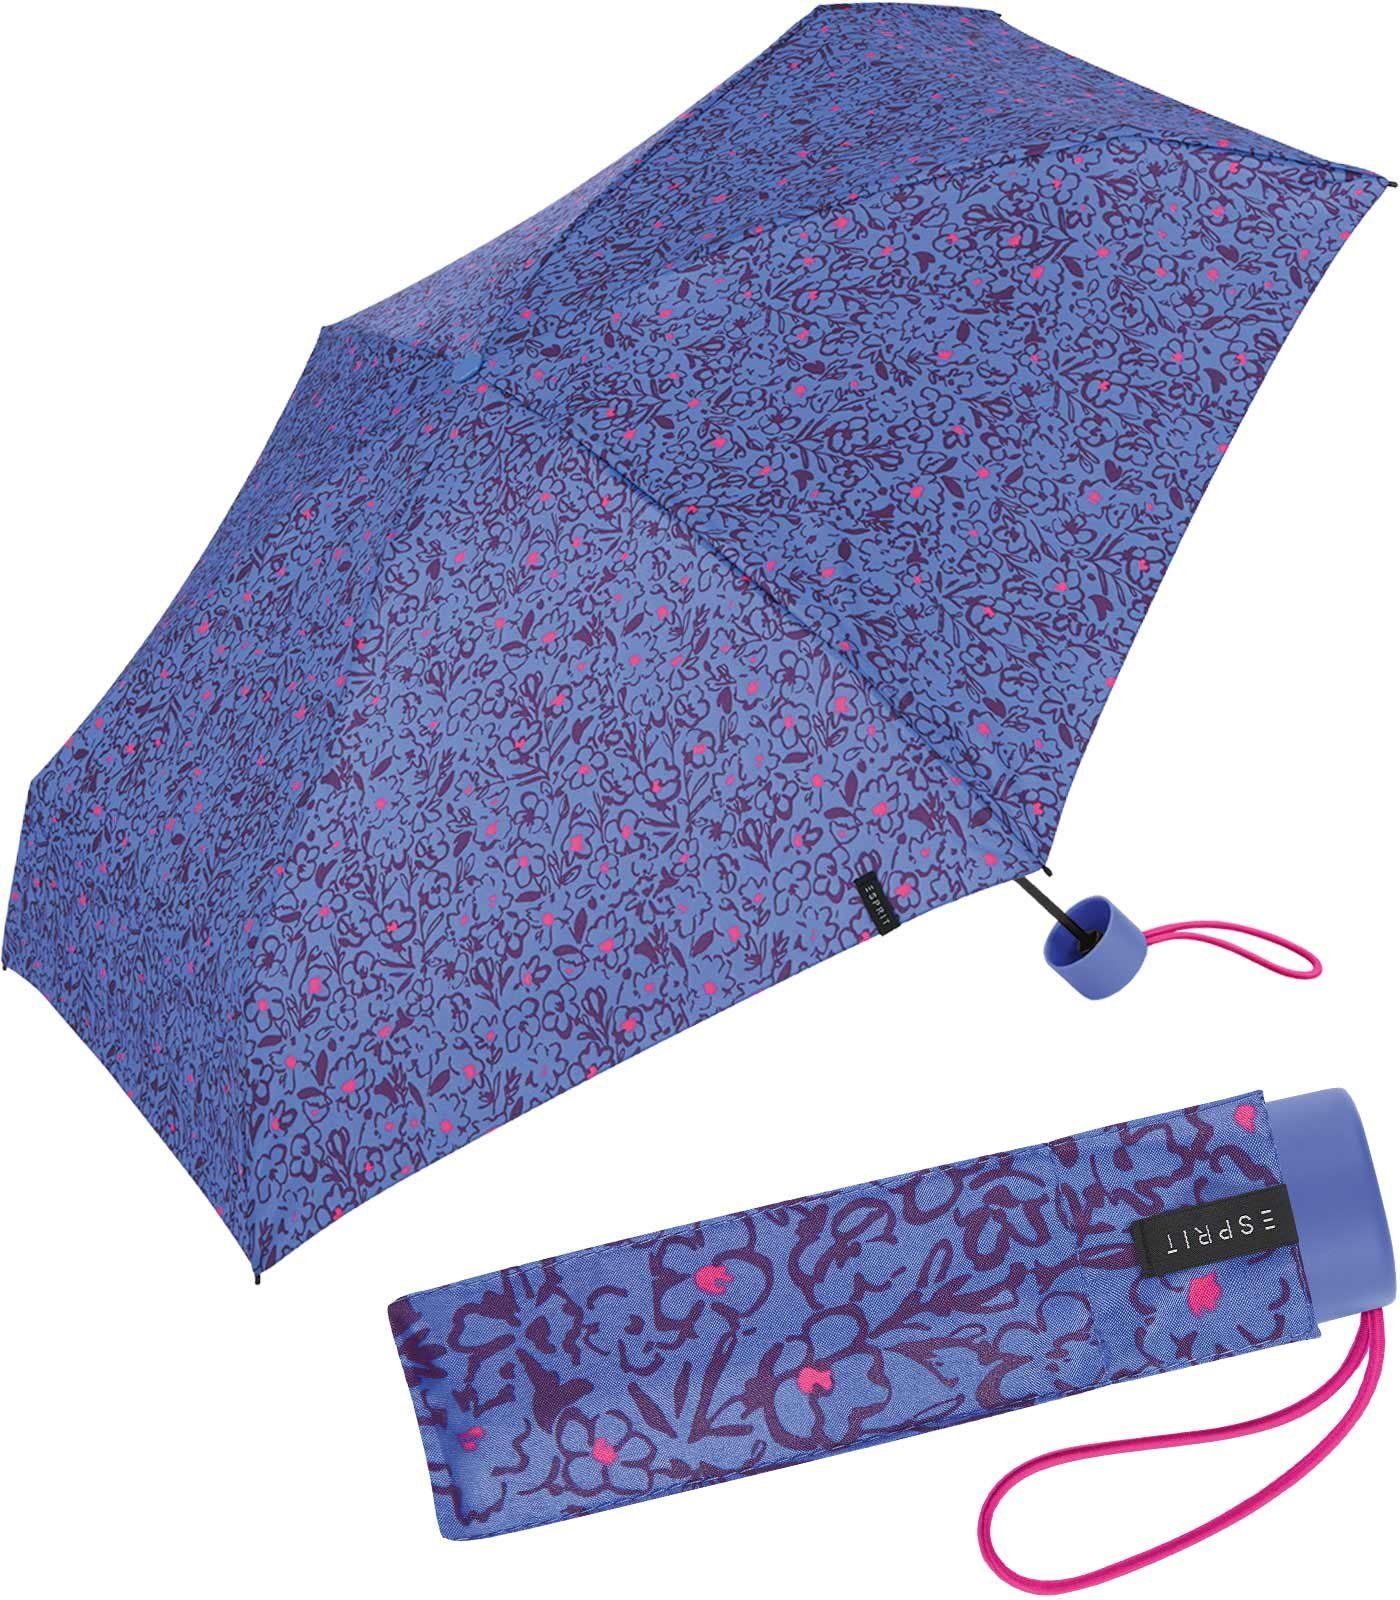 Super romantischem Scribbled mit Mini Esprit - Romance, Damen Petito blau Taschenregenschirm Blüten-Muster